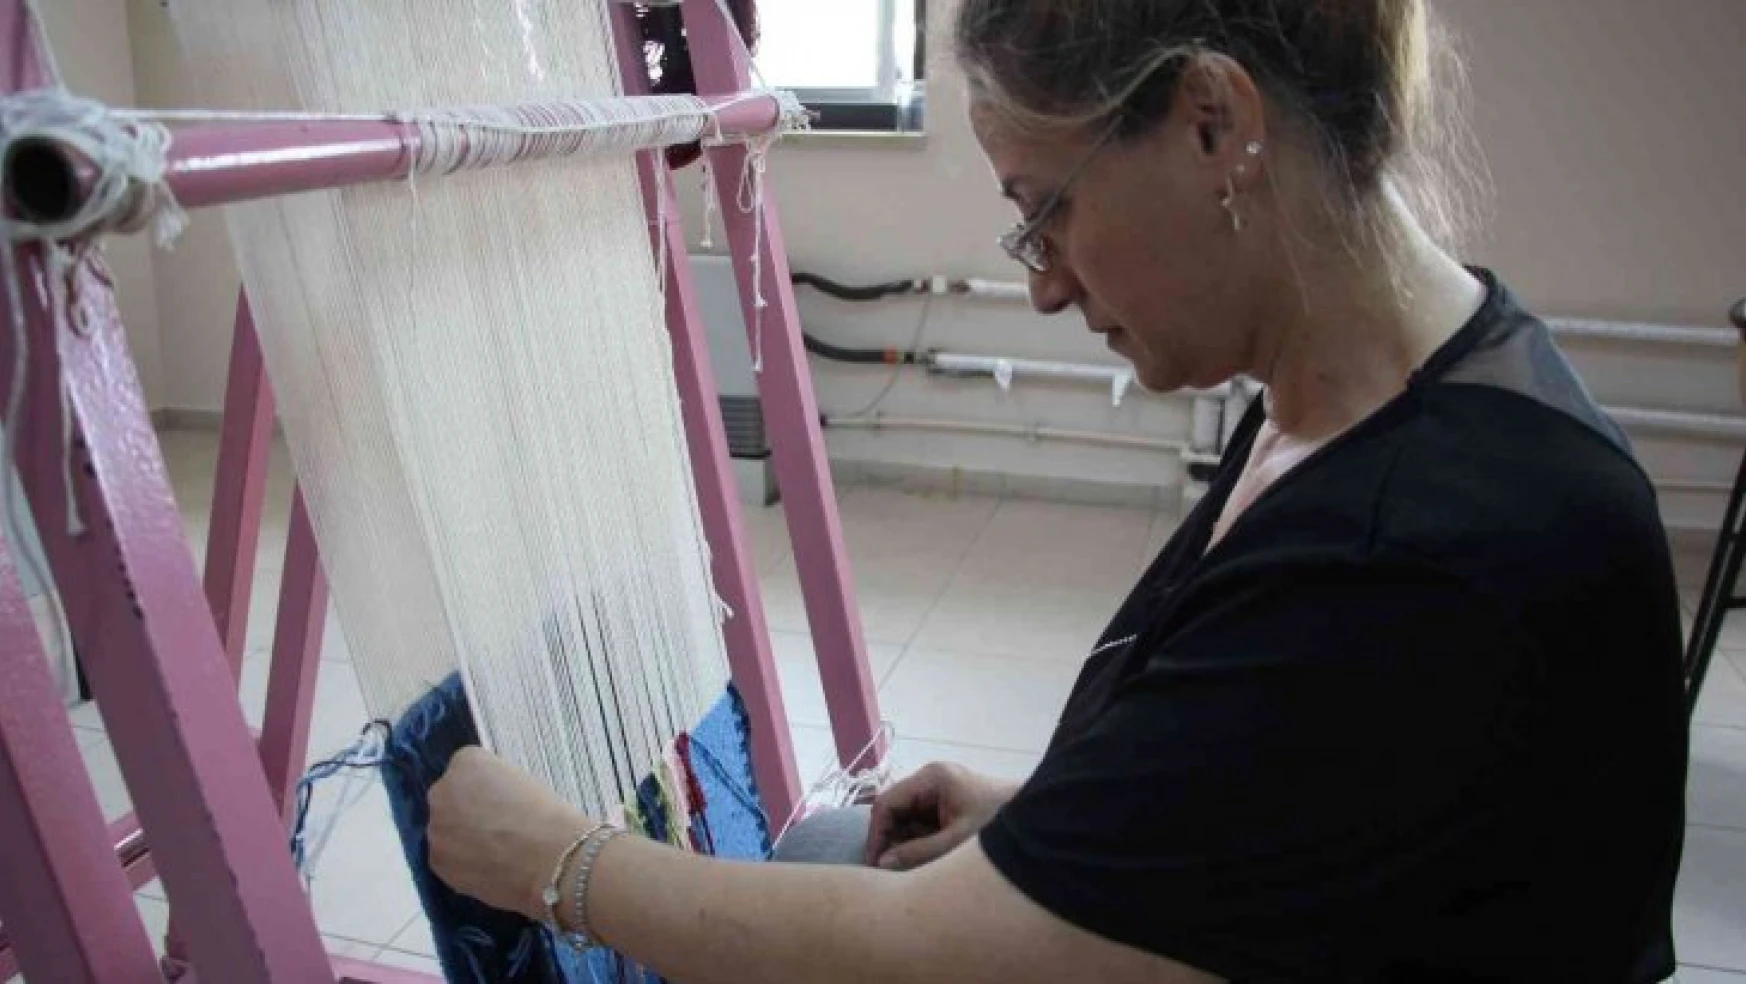 Geleneksel kilim ve cicim dokuma sanatı, kadınların ellerinde yaşatılıyor